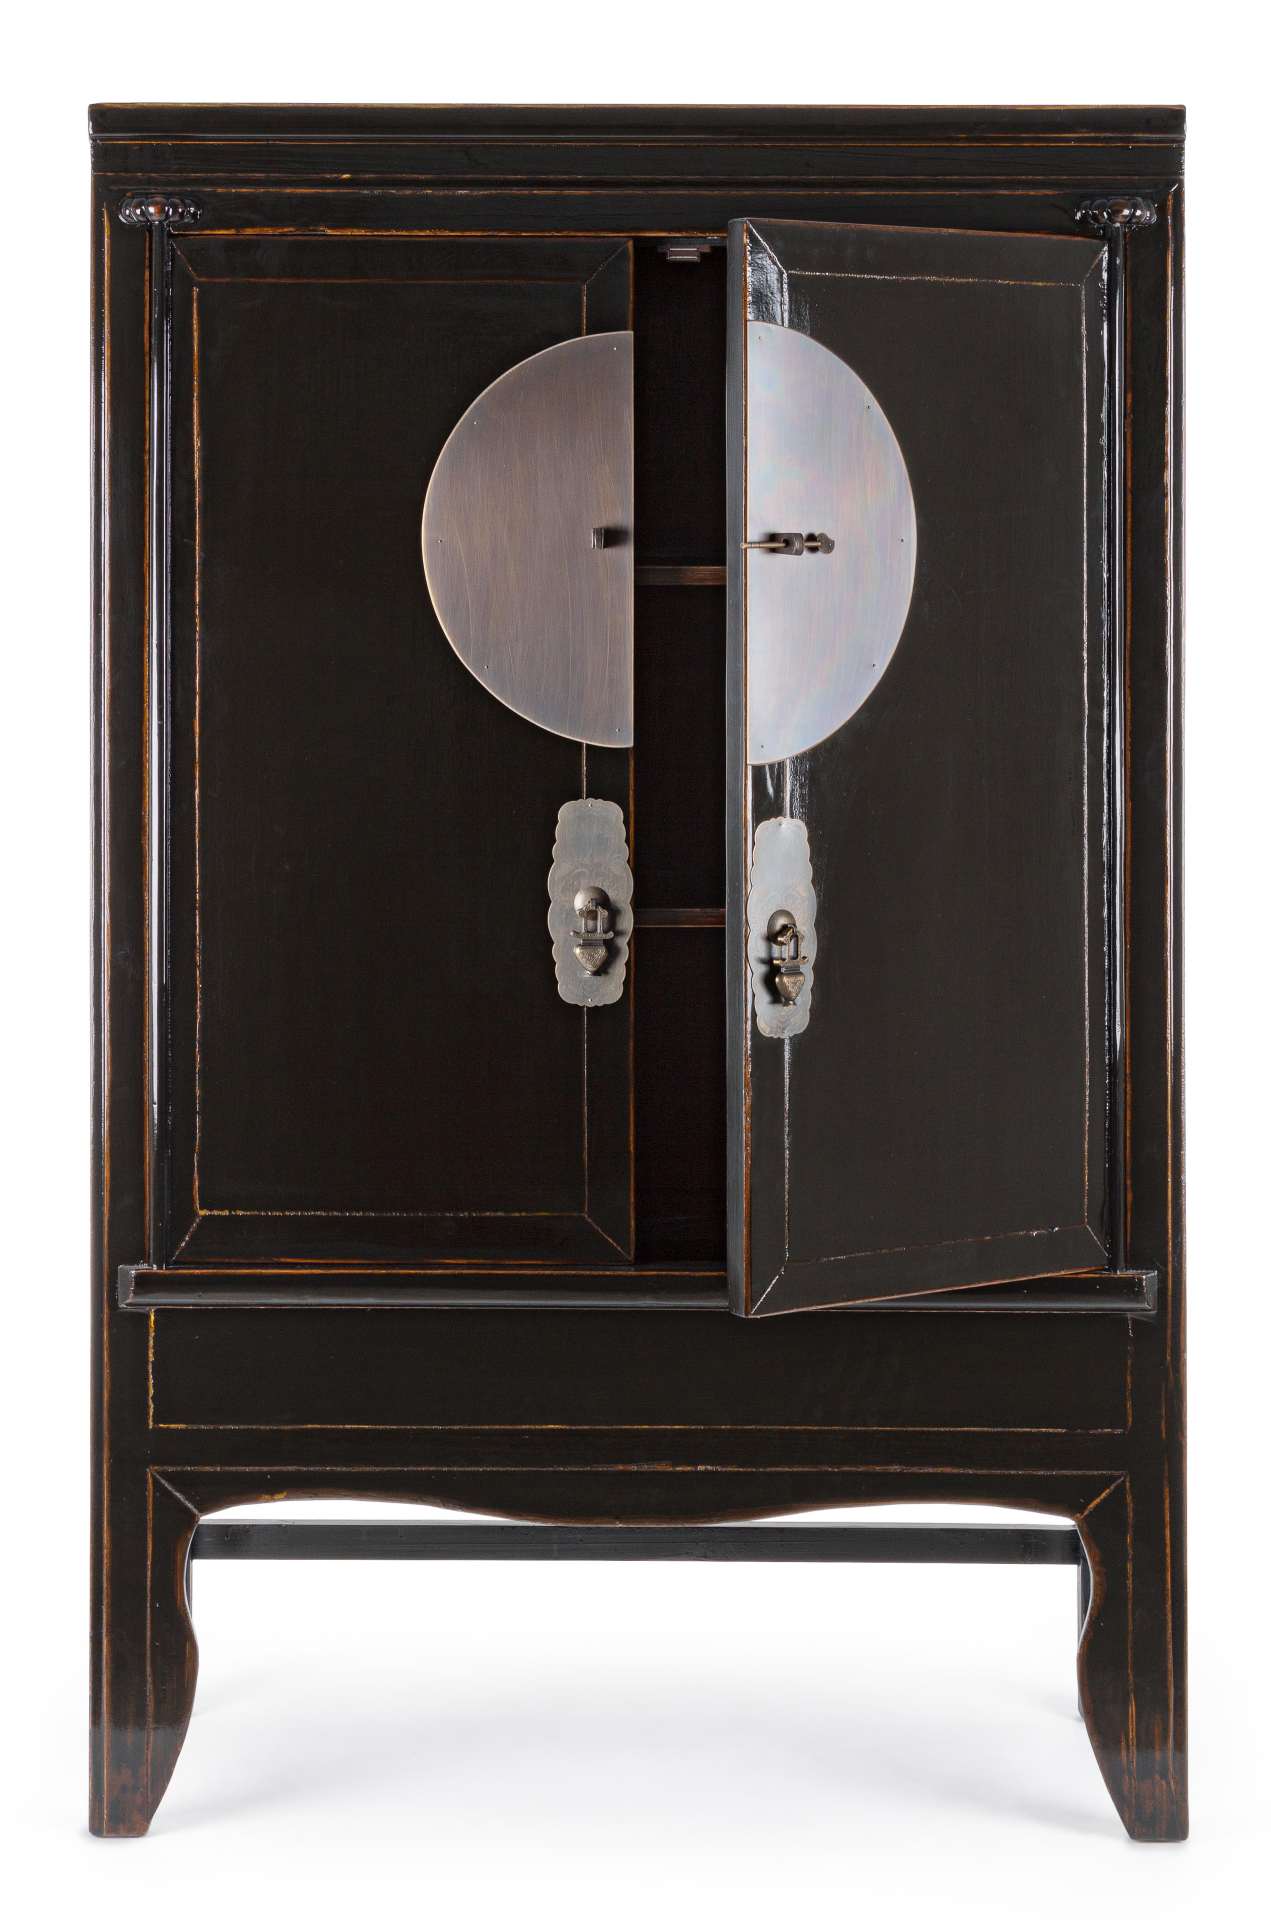 Der Schrank Jinan überzeugt mit seinem klassischen Design. Gefertigt wurde er aus recyceltem Ulmenholz, welches einen schwarzen Farbton besitzt. Das Gestell ist auch aus Ulmenholz. Der Schrank verfügt über zwei Türen. Die Breite beträgt 108 cm.